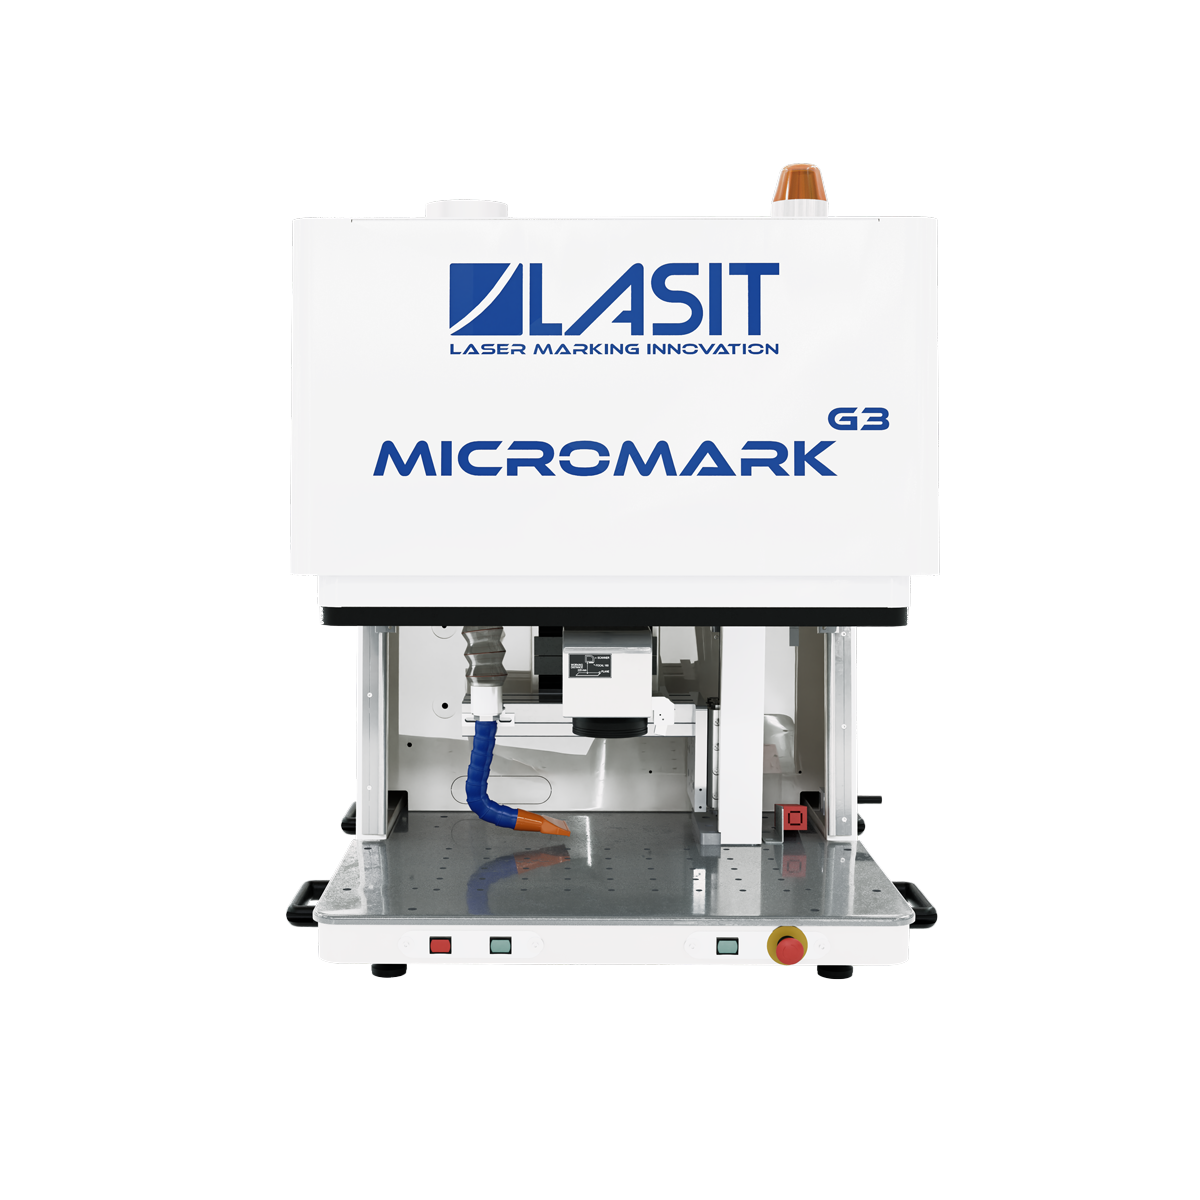 Micromark_web-02 LASIT répond aux 10 questions les plus courantes sur le marquage laser